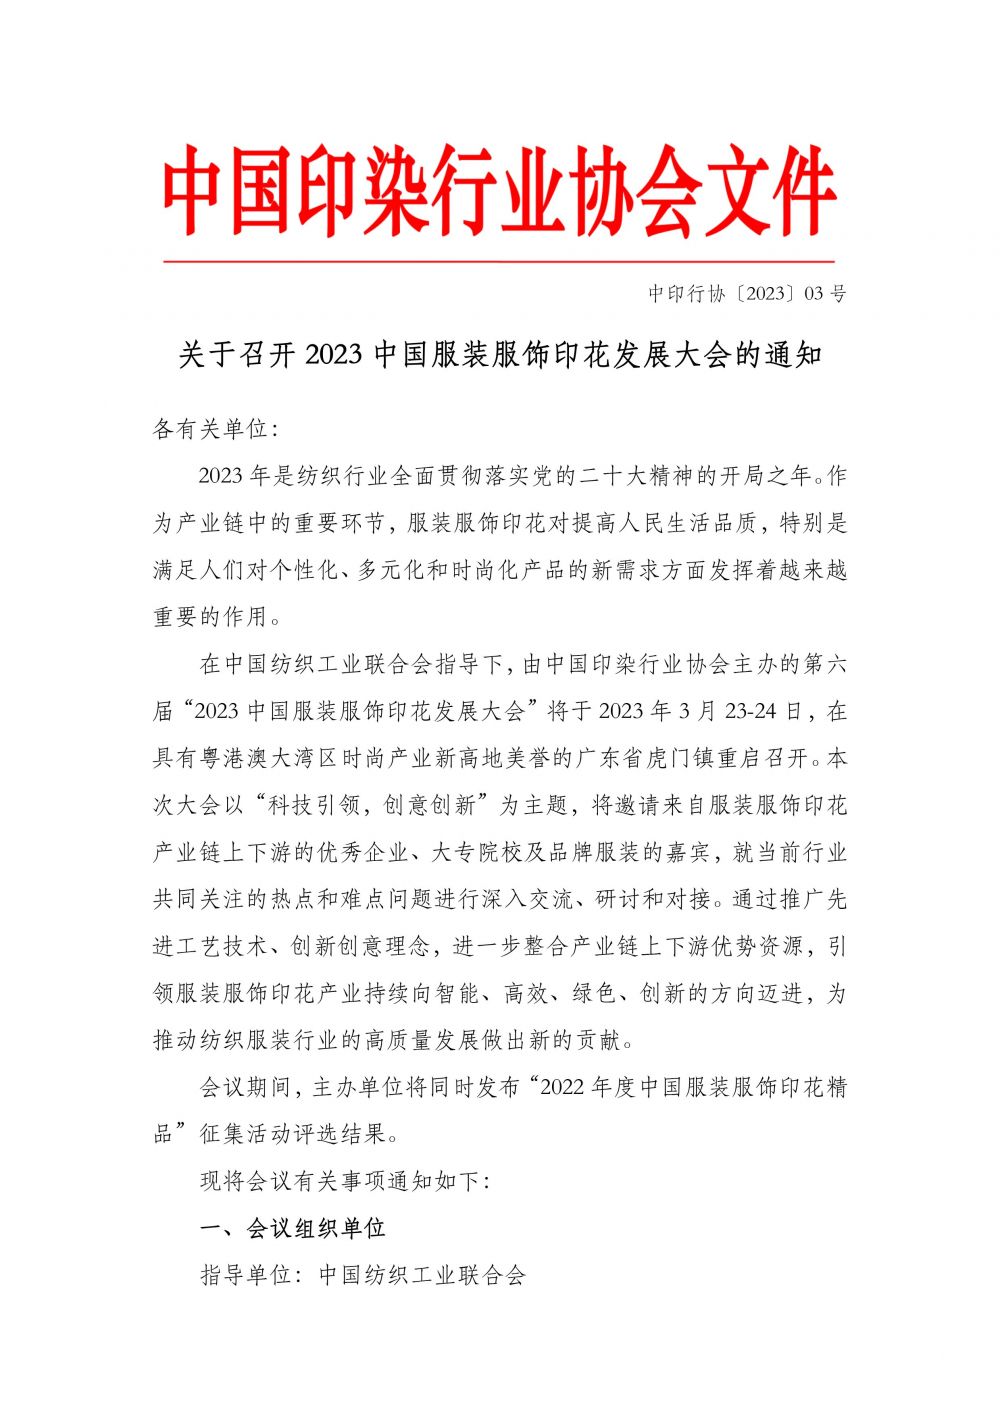 关于召开2023中国服装服饰印花发展大会的通知-1.jpg